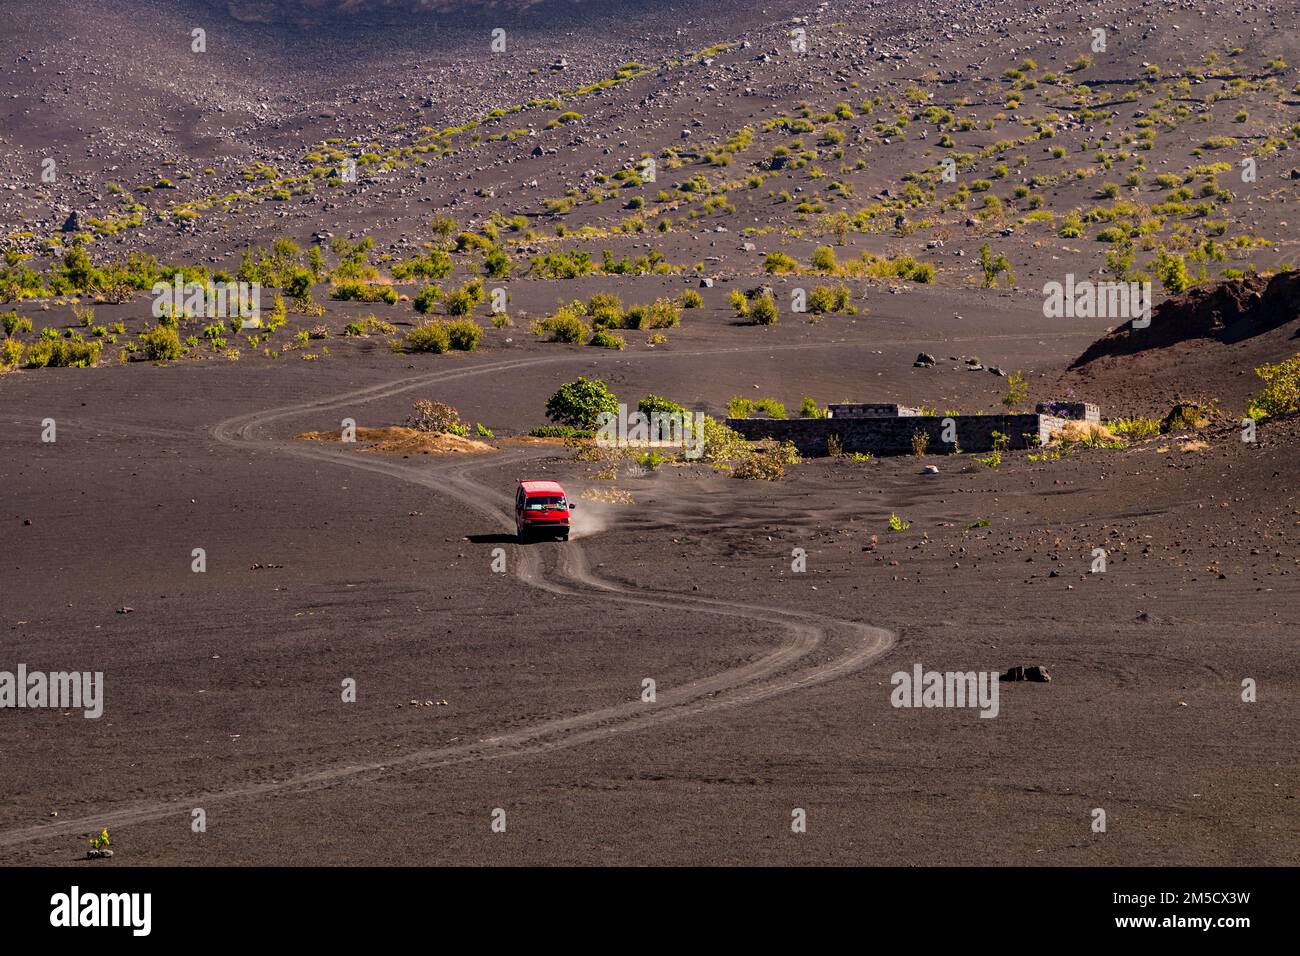 Un minibús rojo conduce a lo largo de un camino de polvo de ceniza en un flanco de Pico do Fogo, Islas de Cabo Verde Foto de stock